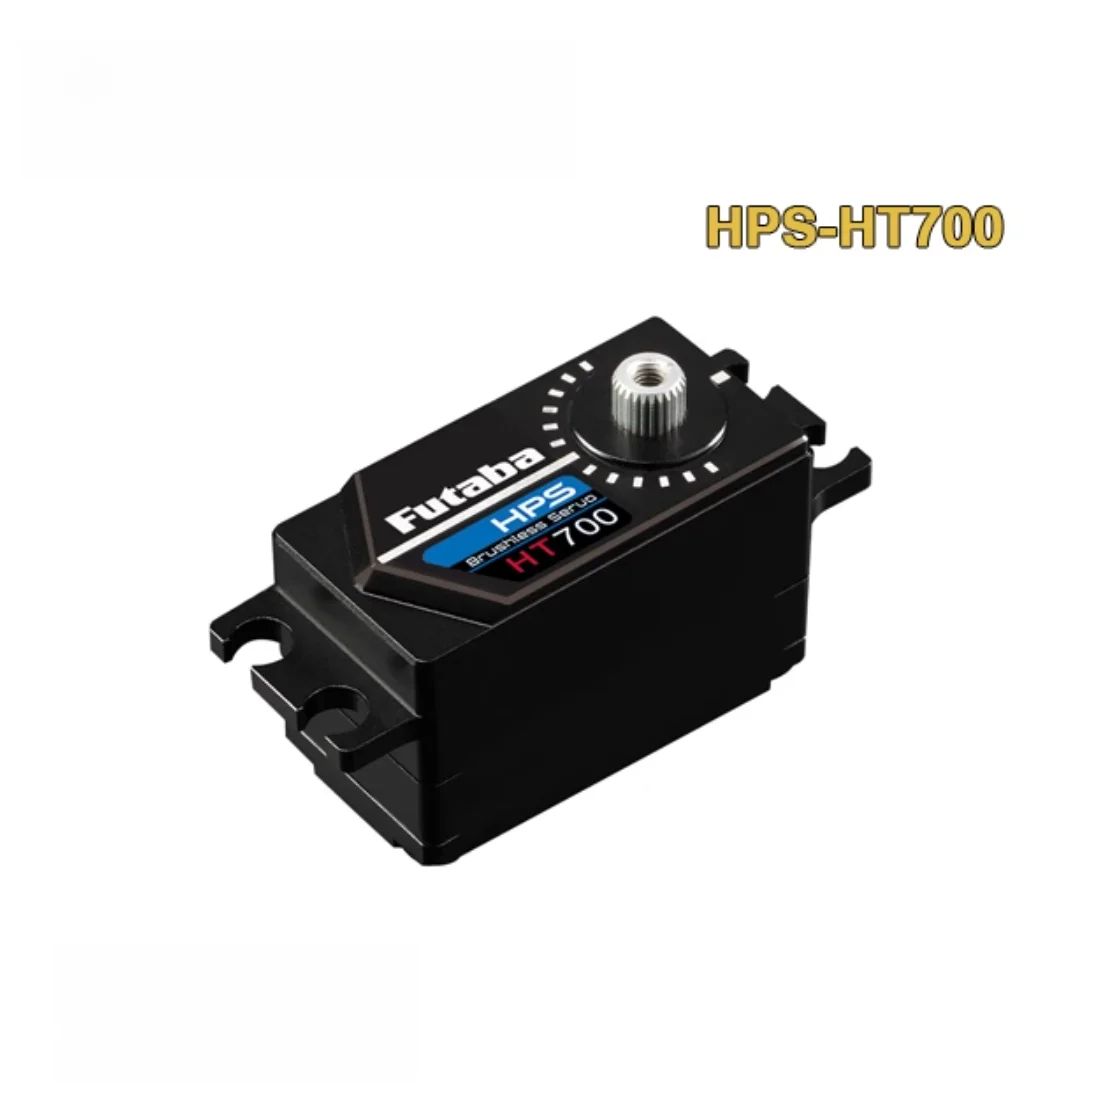 HPS-HT700